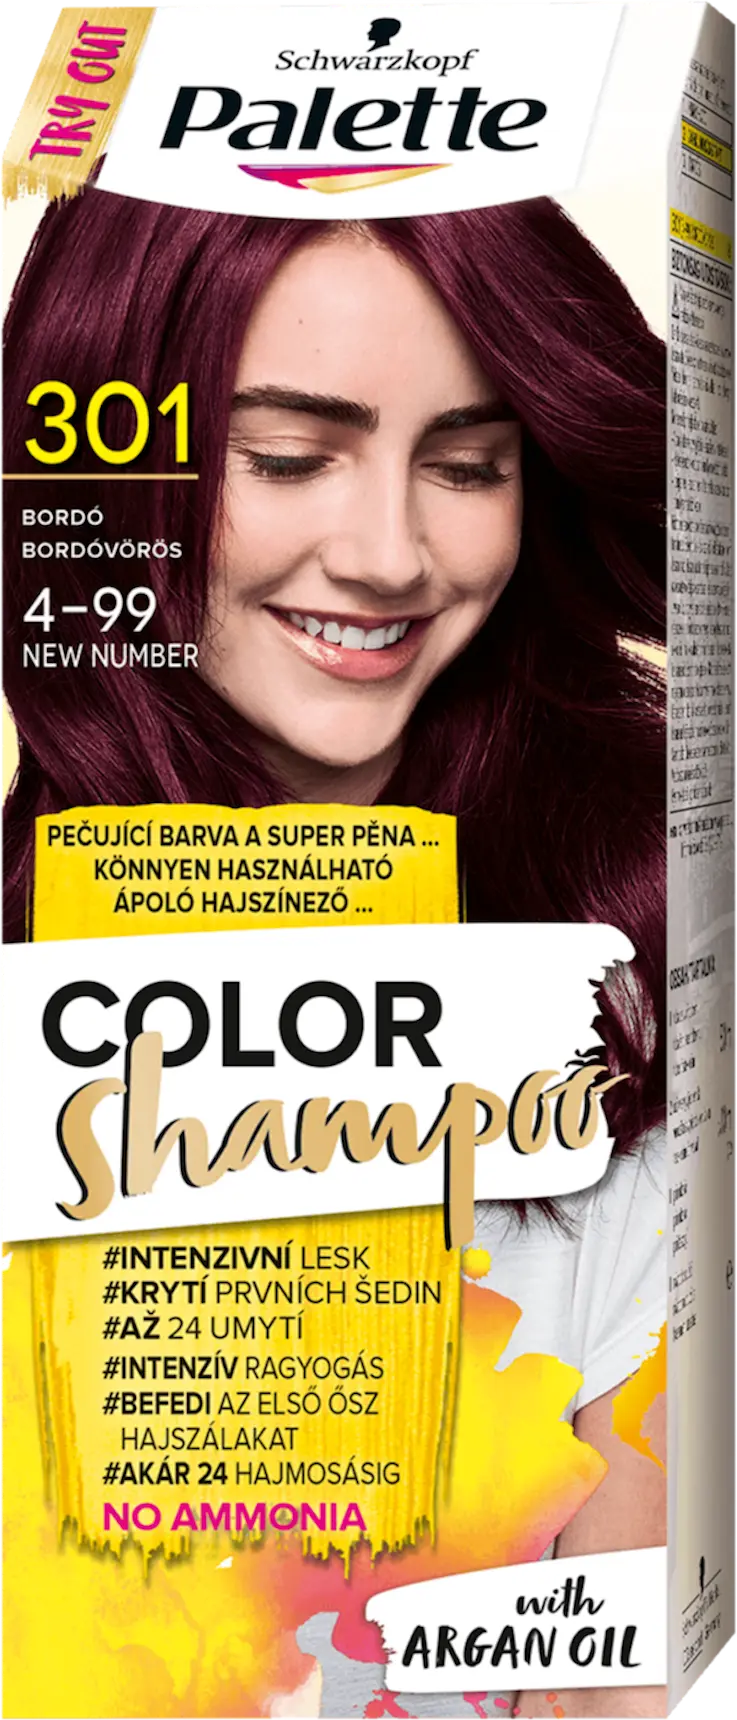 schwarzkopf palette szampon koloryzujacy